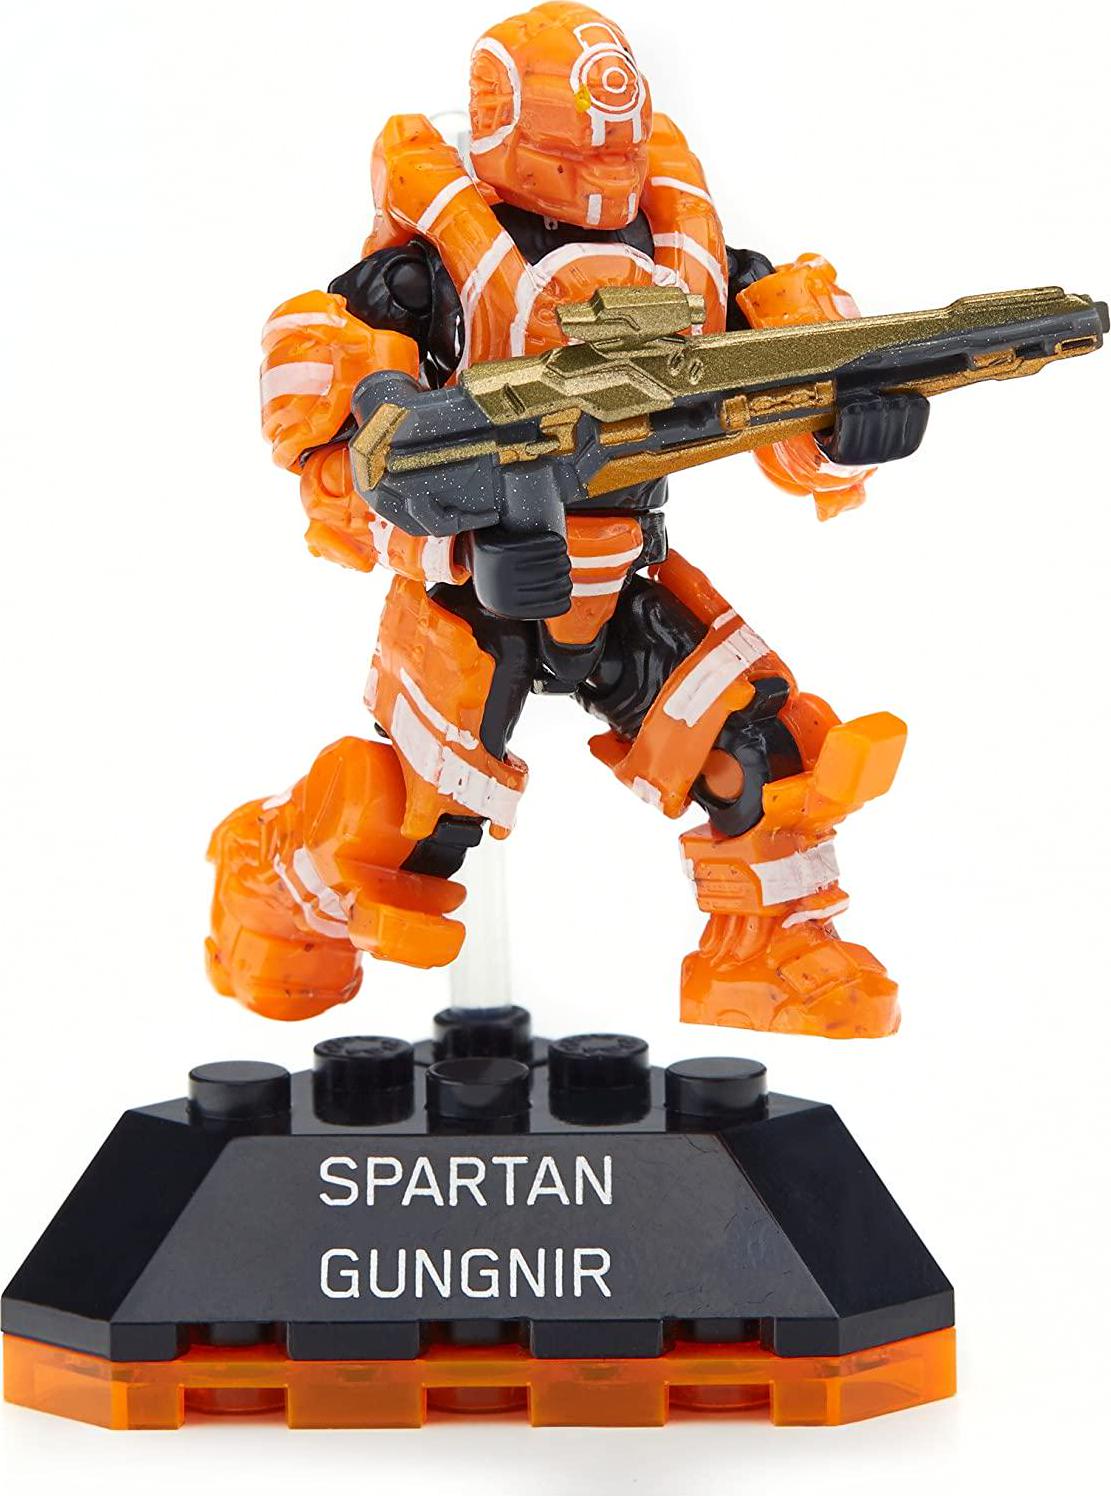 Mega Bloks, Mega Construx Halo Heroes Series 2 Spartan Gungnir Figure, No. 6